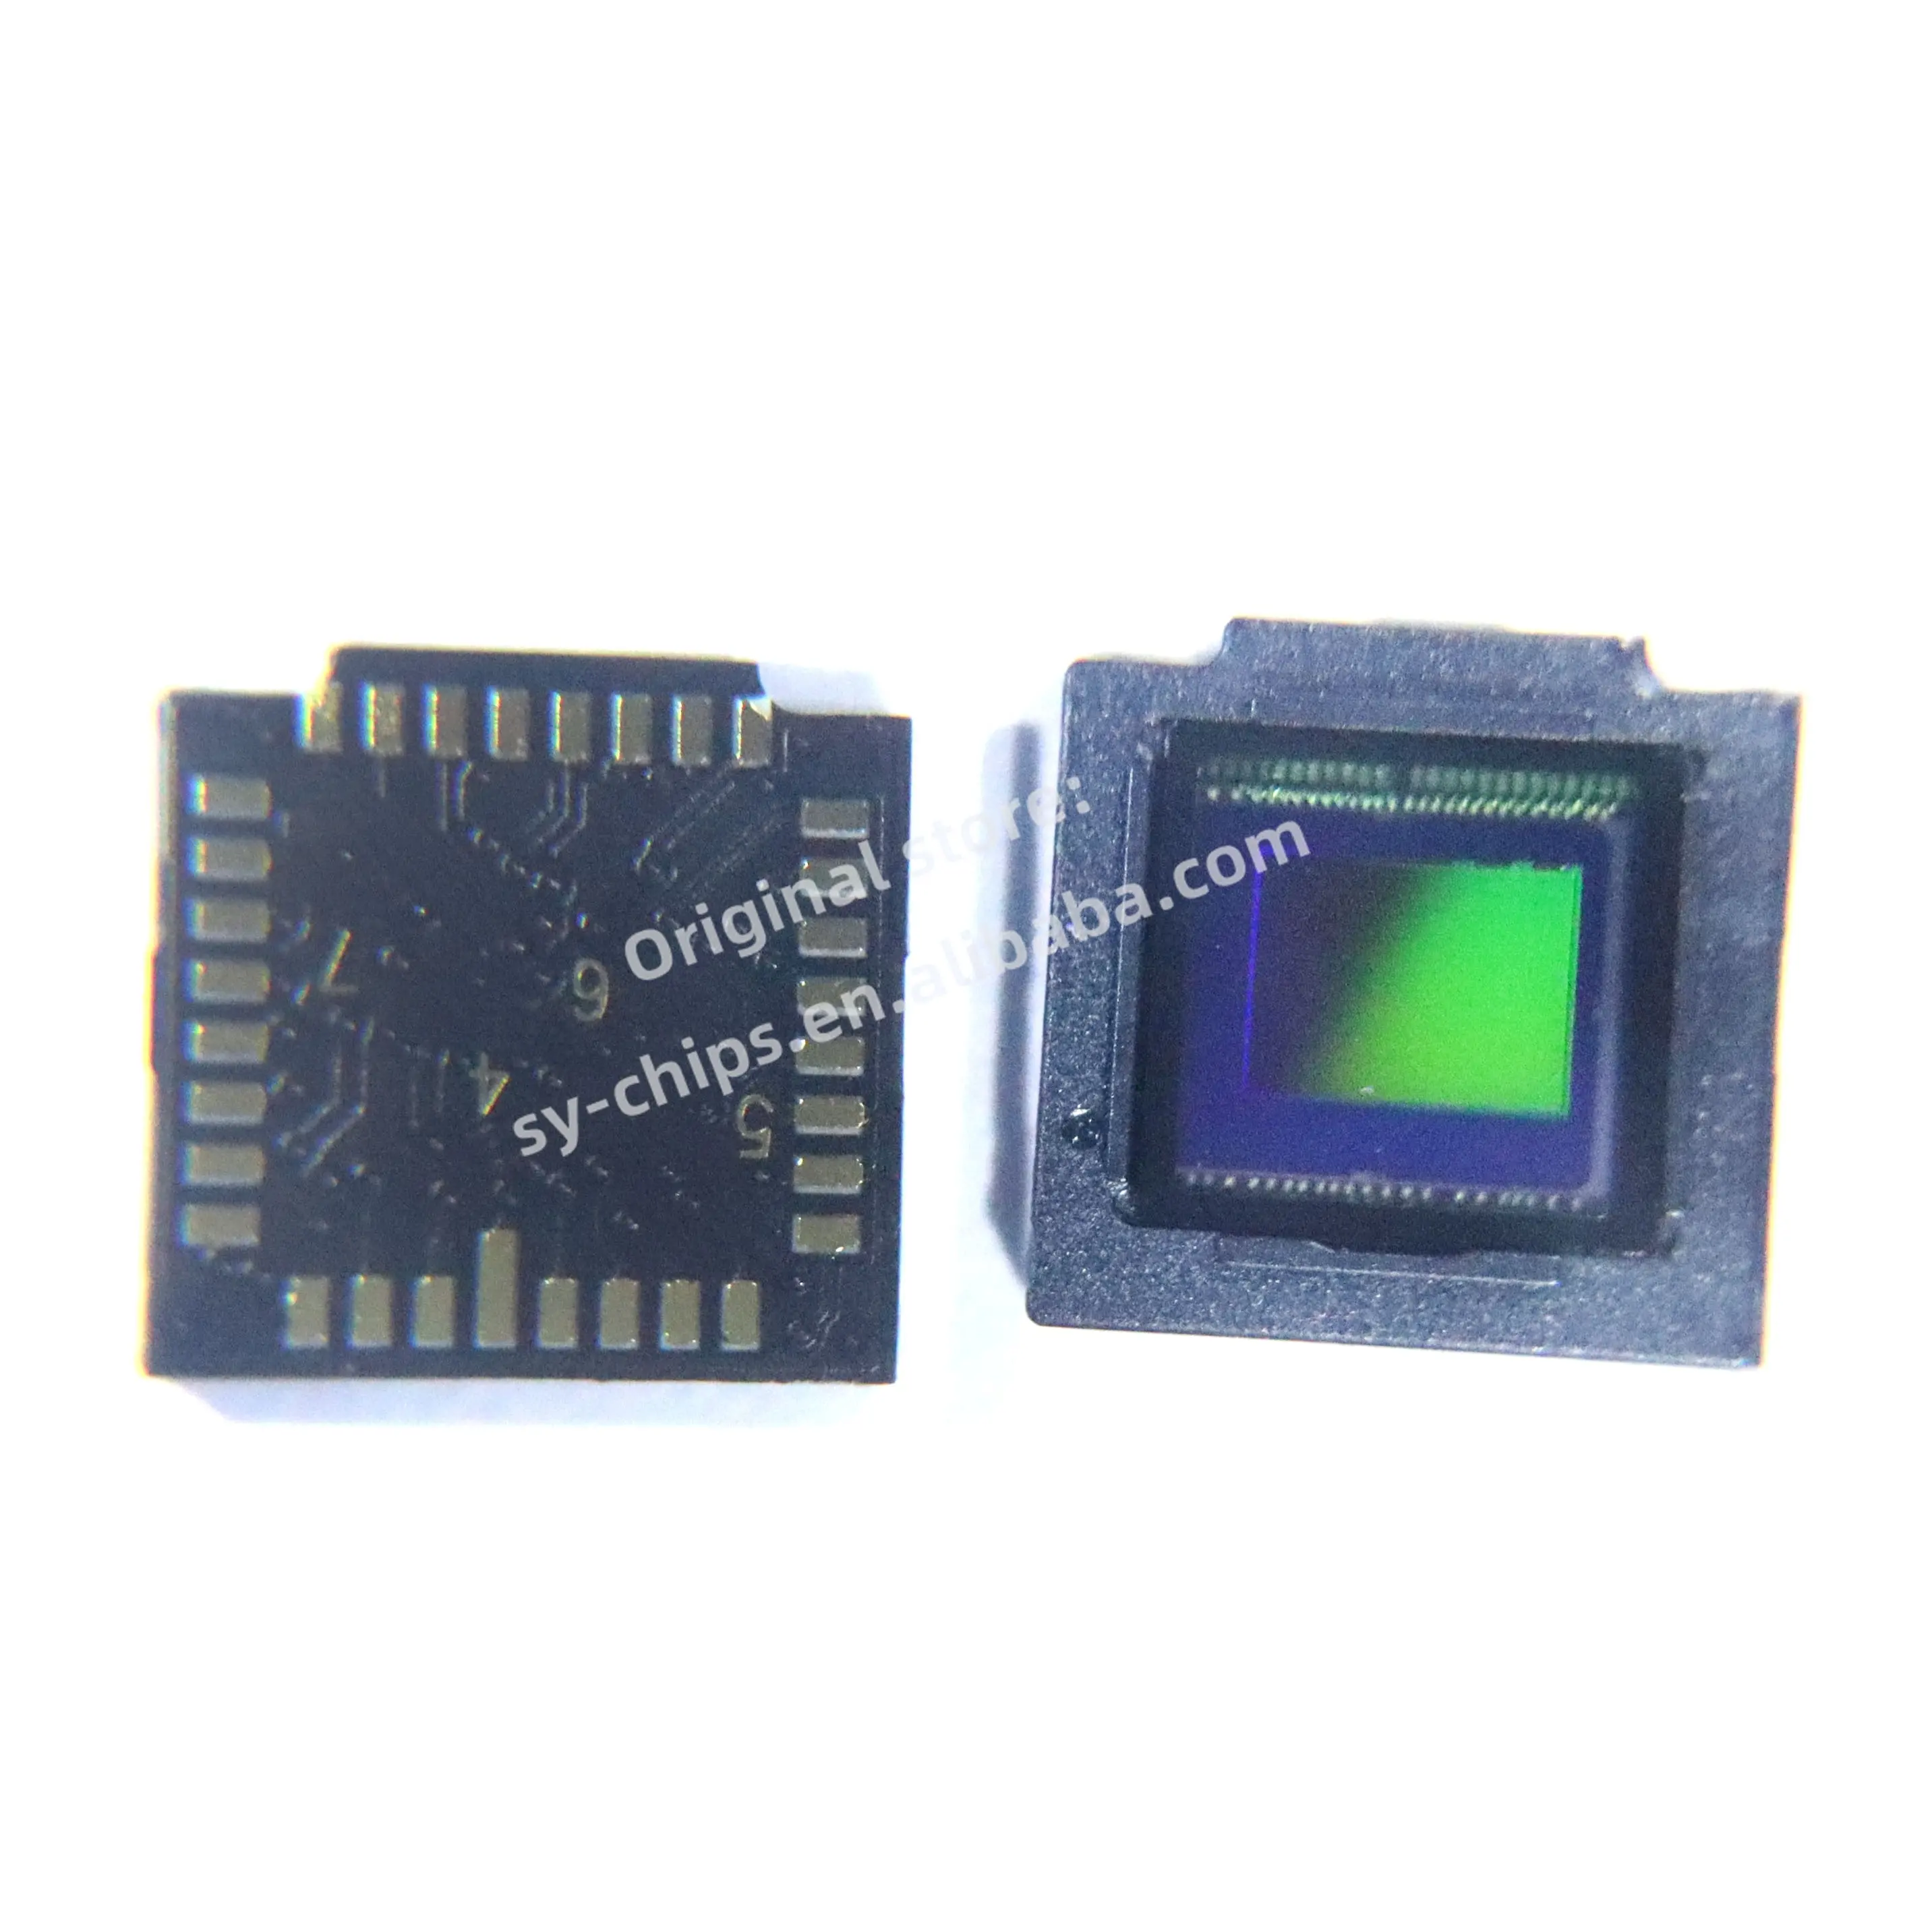 SY שבבים IC חיישני תמונה OV5640 OV5645 OV5670 OV5675 OV5693 OV5695 OV5648 OV9281 OV5647 מודול תמונה חיישן מצלמה Cmos